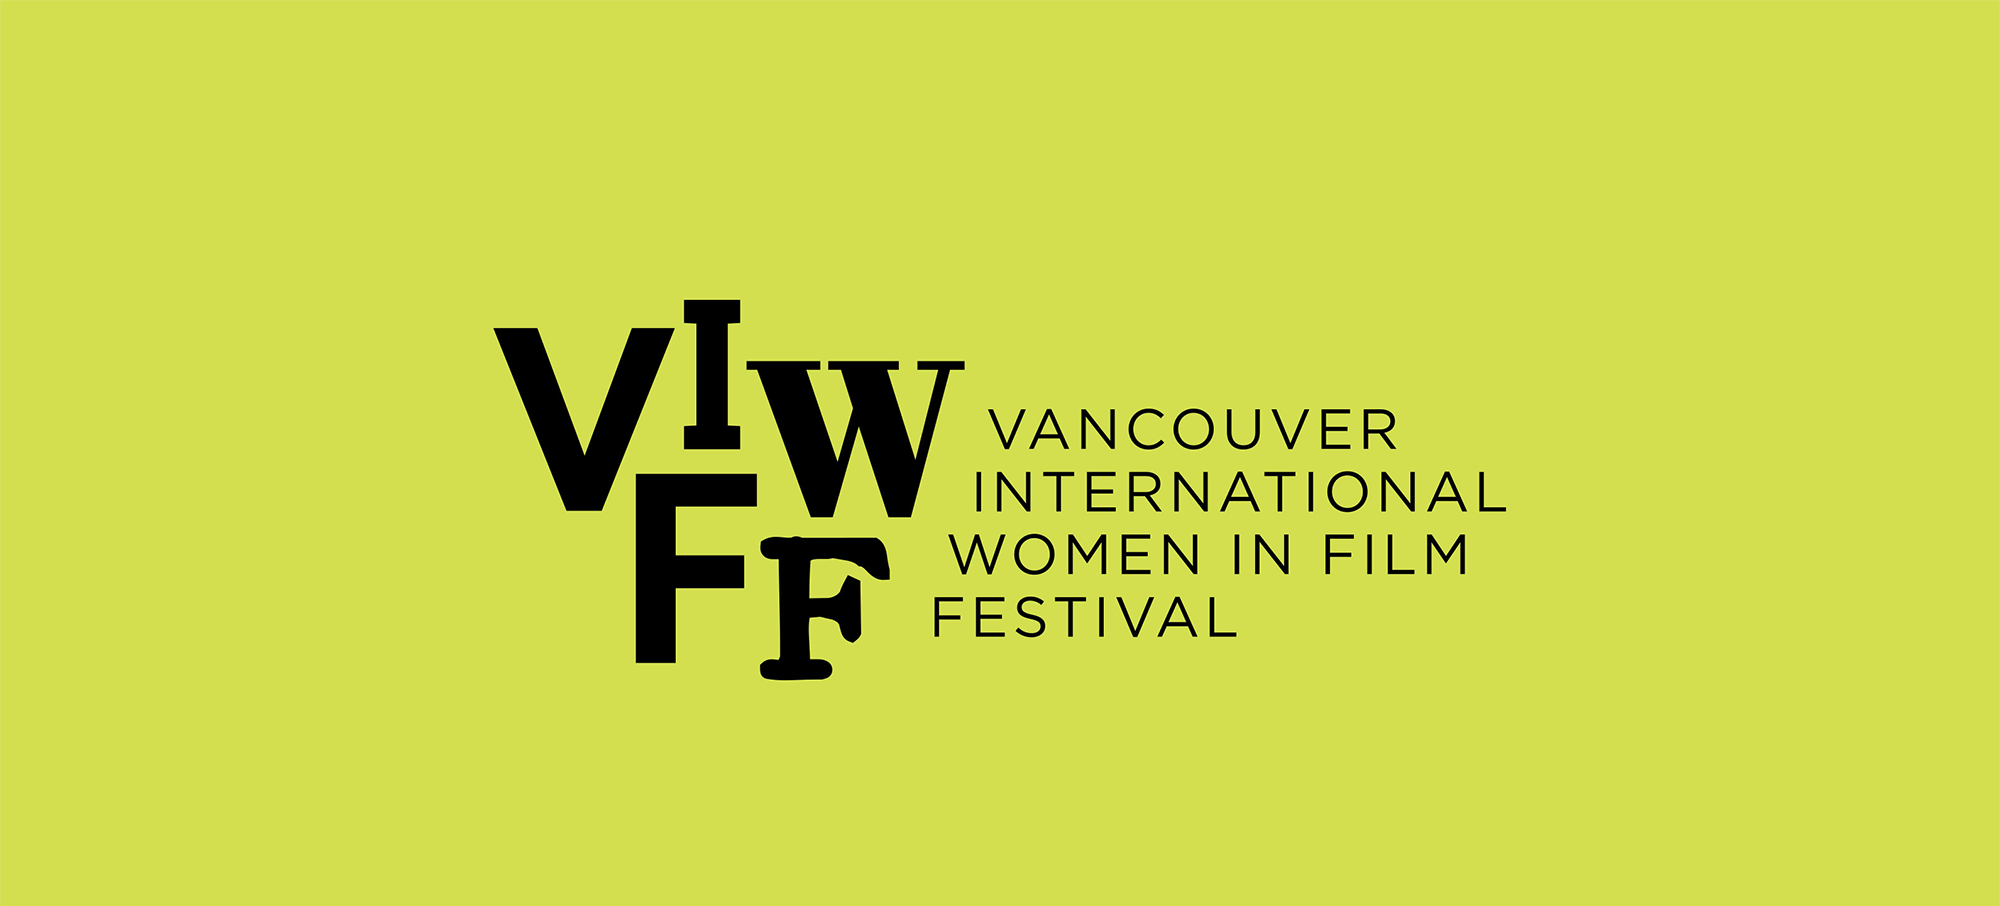 Logo Design for Vancouver International Women in Film Festival